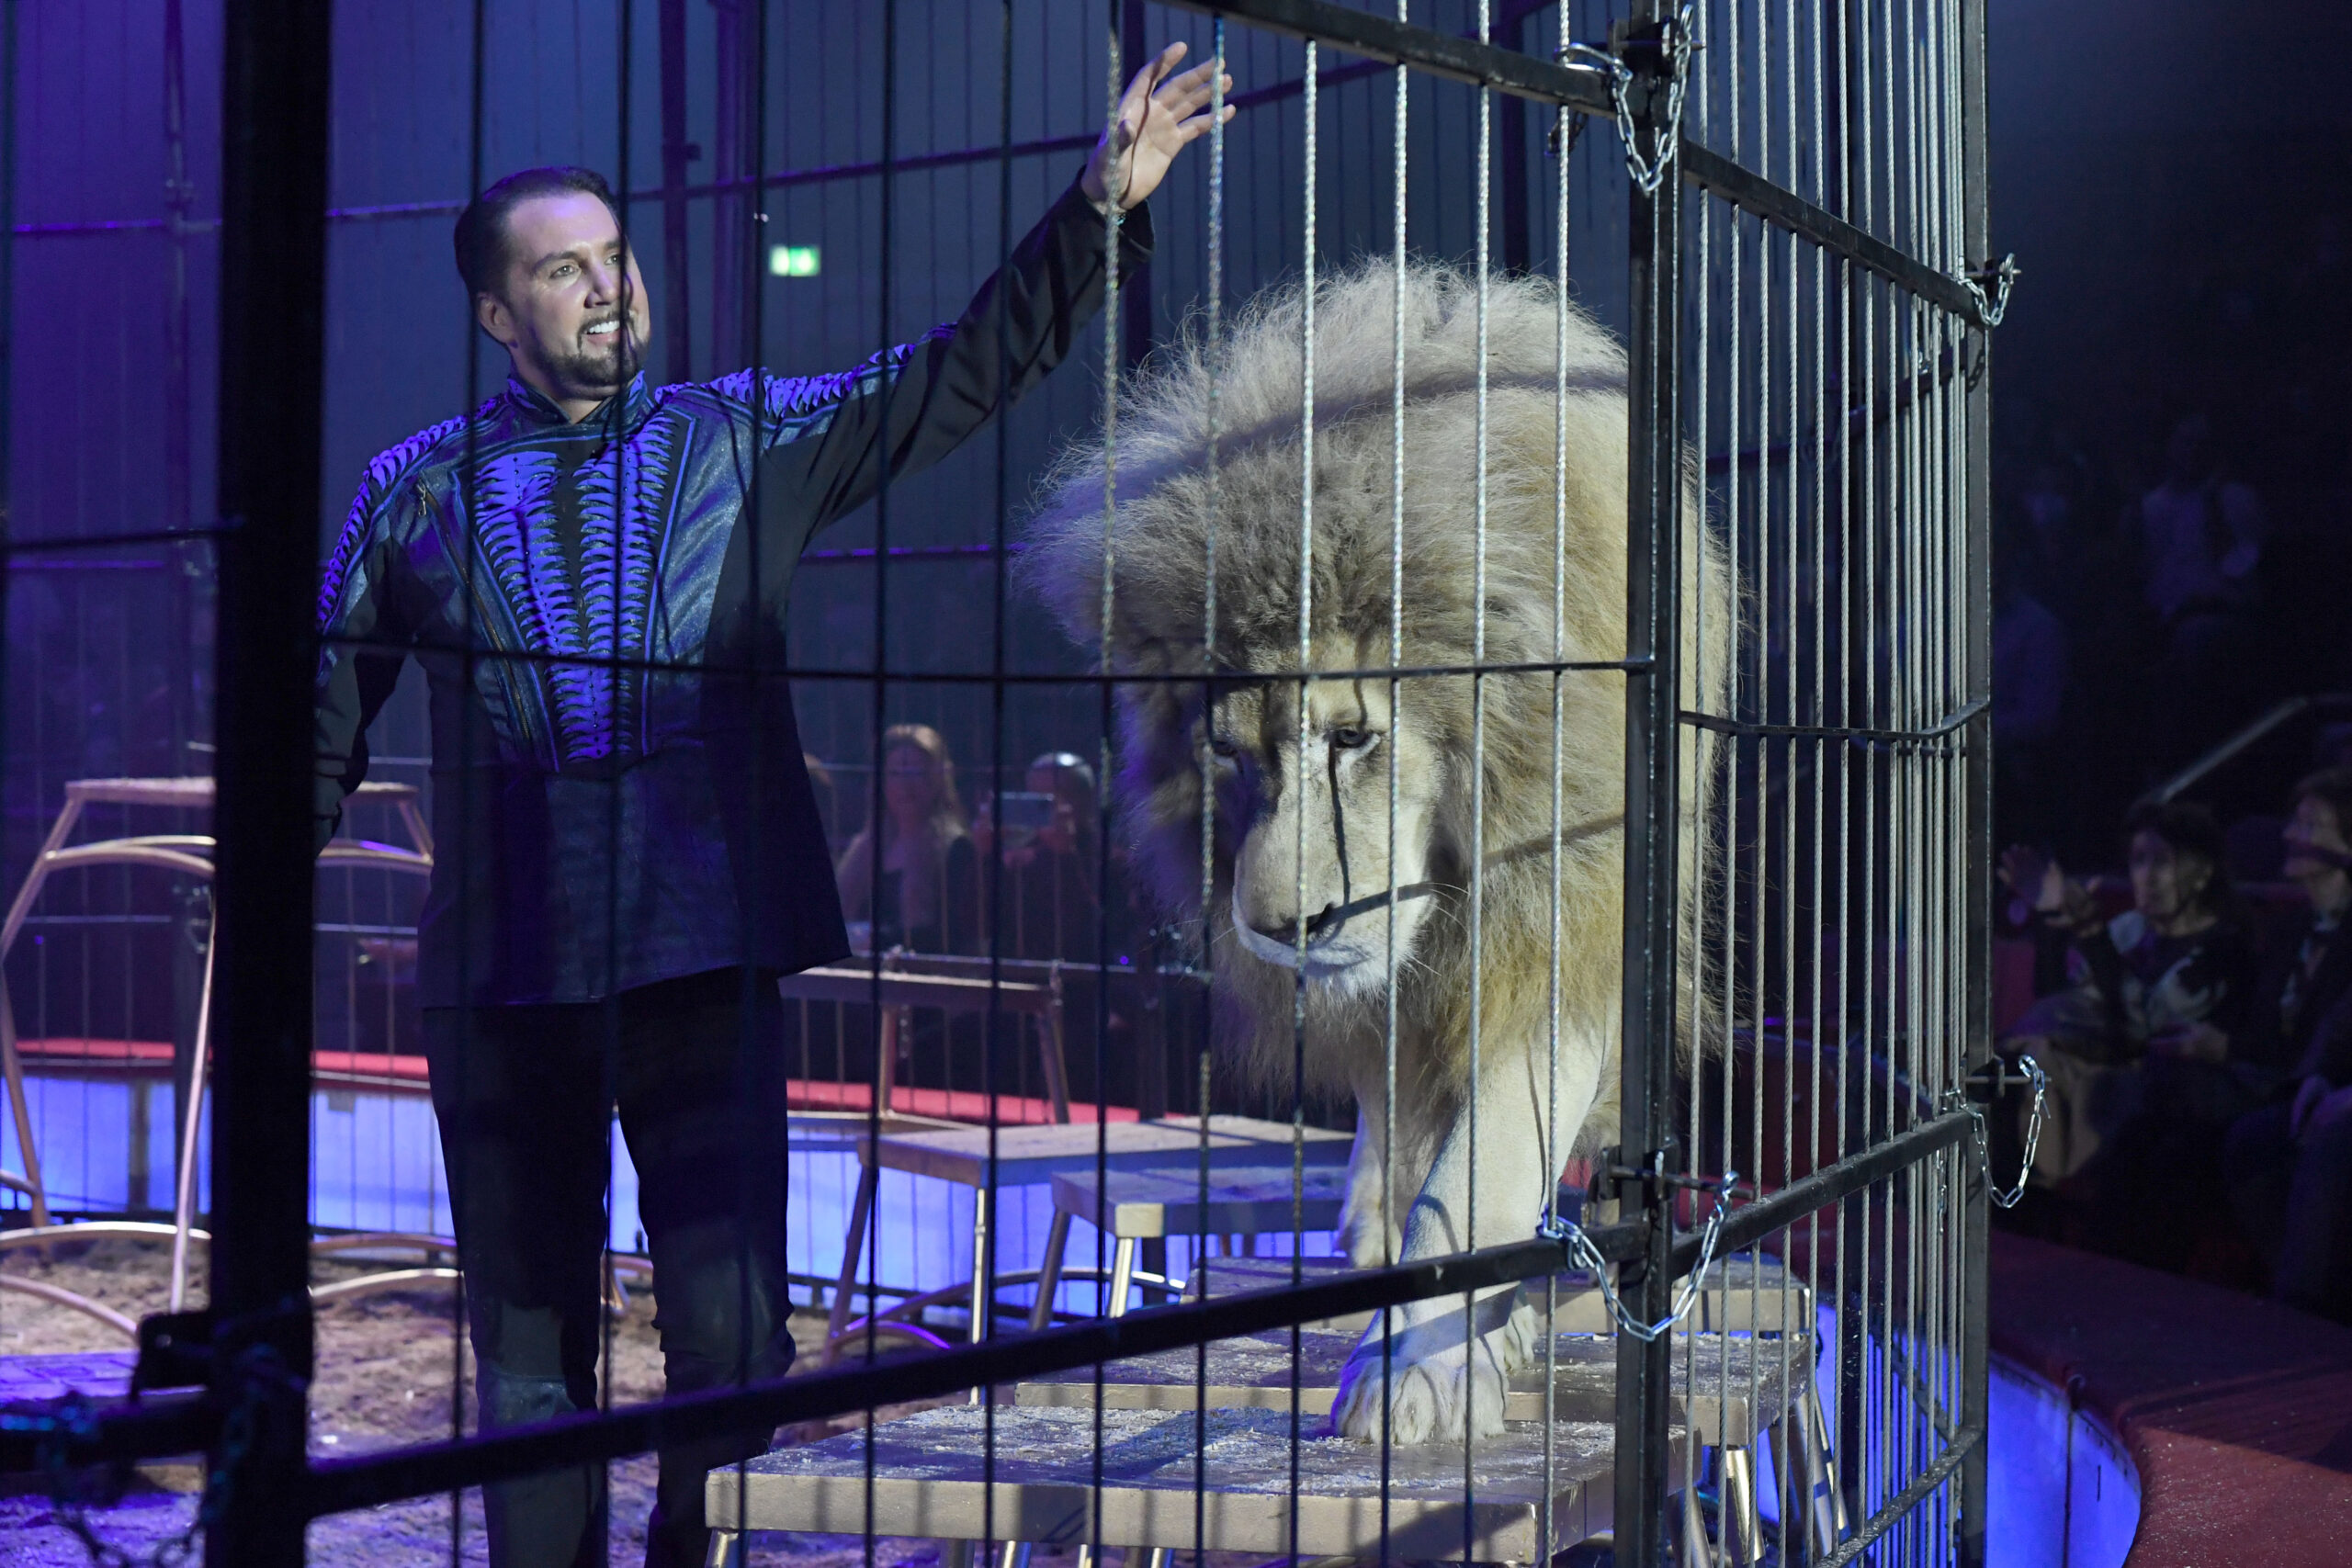 Martin Lacey Jr., Dompteur beim „Circus Krone“, mit einem Löwen. Auch bei den kommenden Aufführungen in Hamburg werden Wildtiere Teil der Vorstellungen sein – das sorgt für Kritik. (Archivbild)